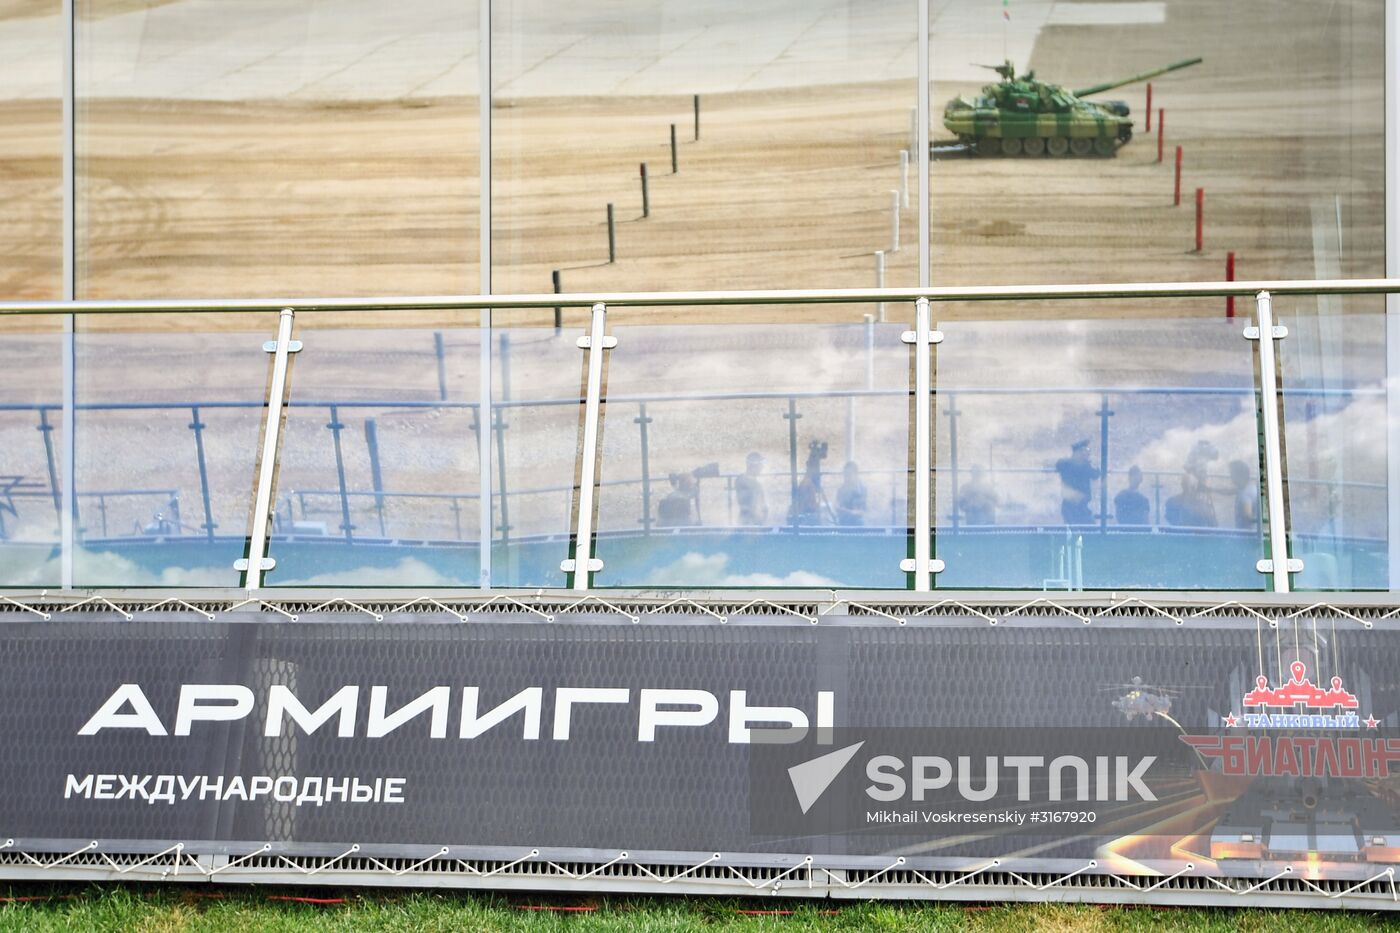 Tank Biathlon. Semifinals. Day one